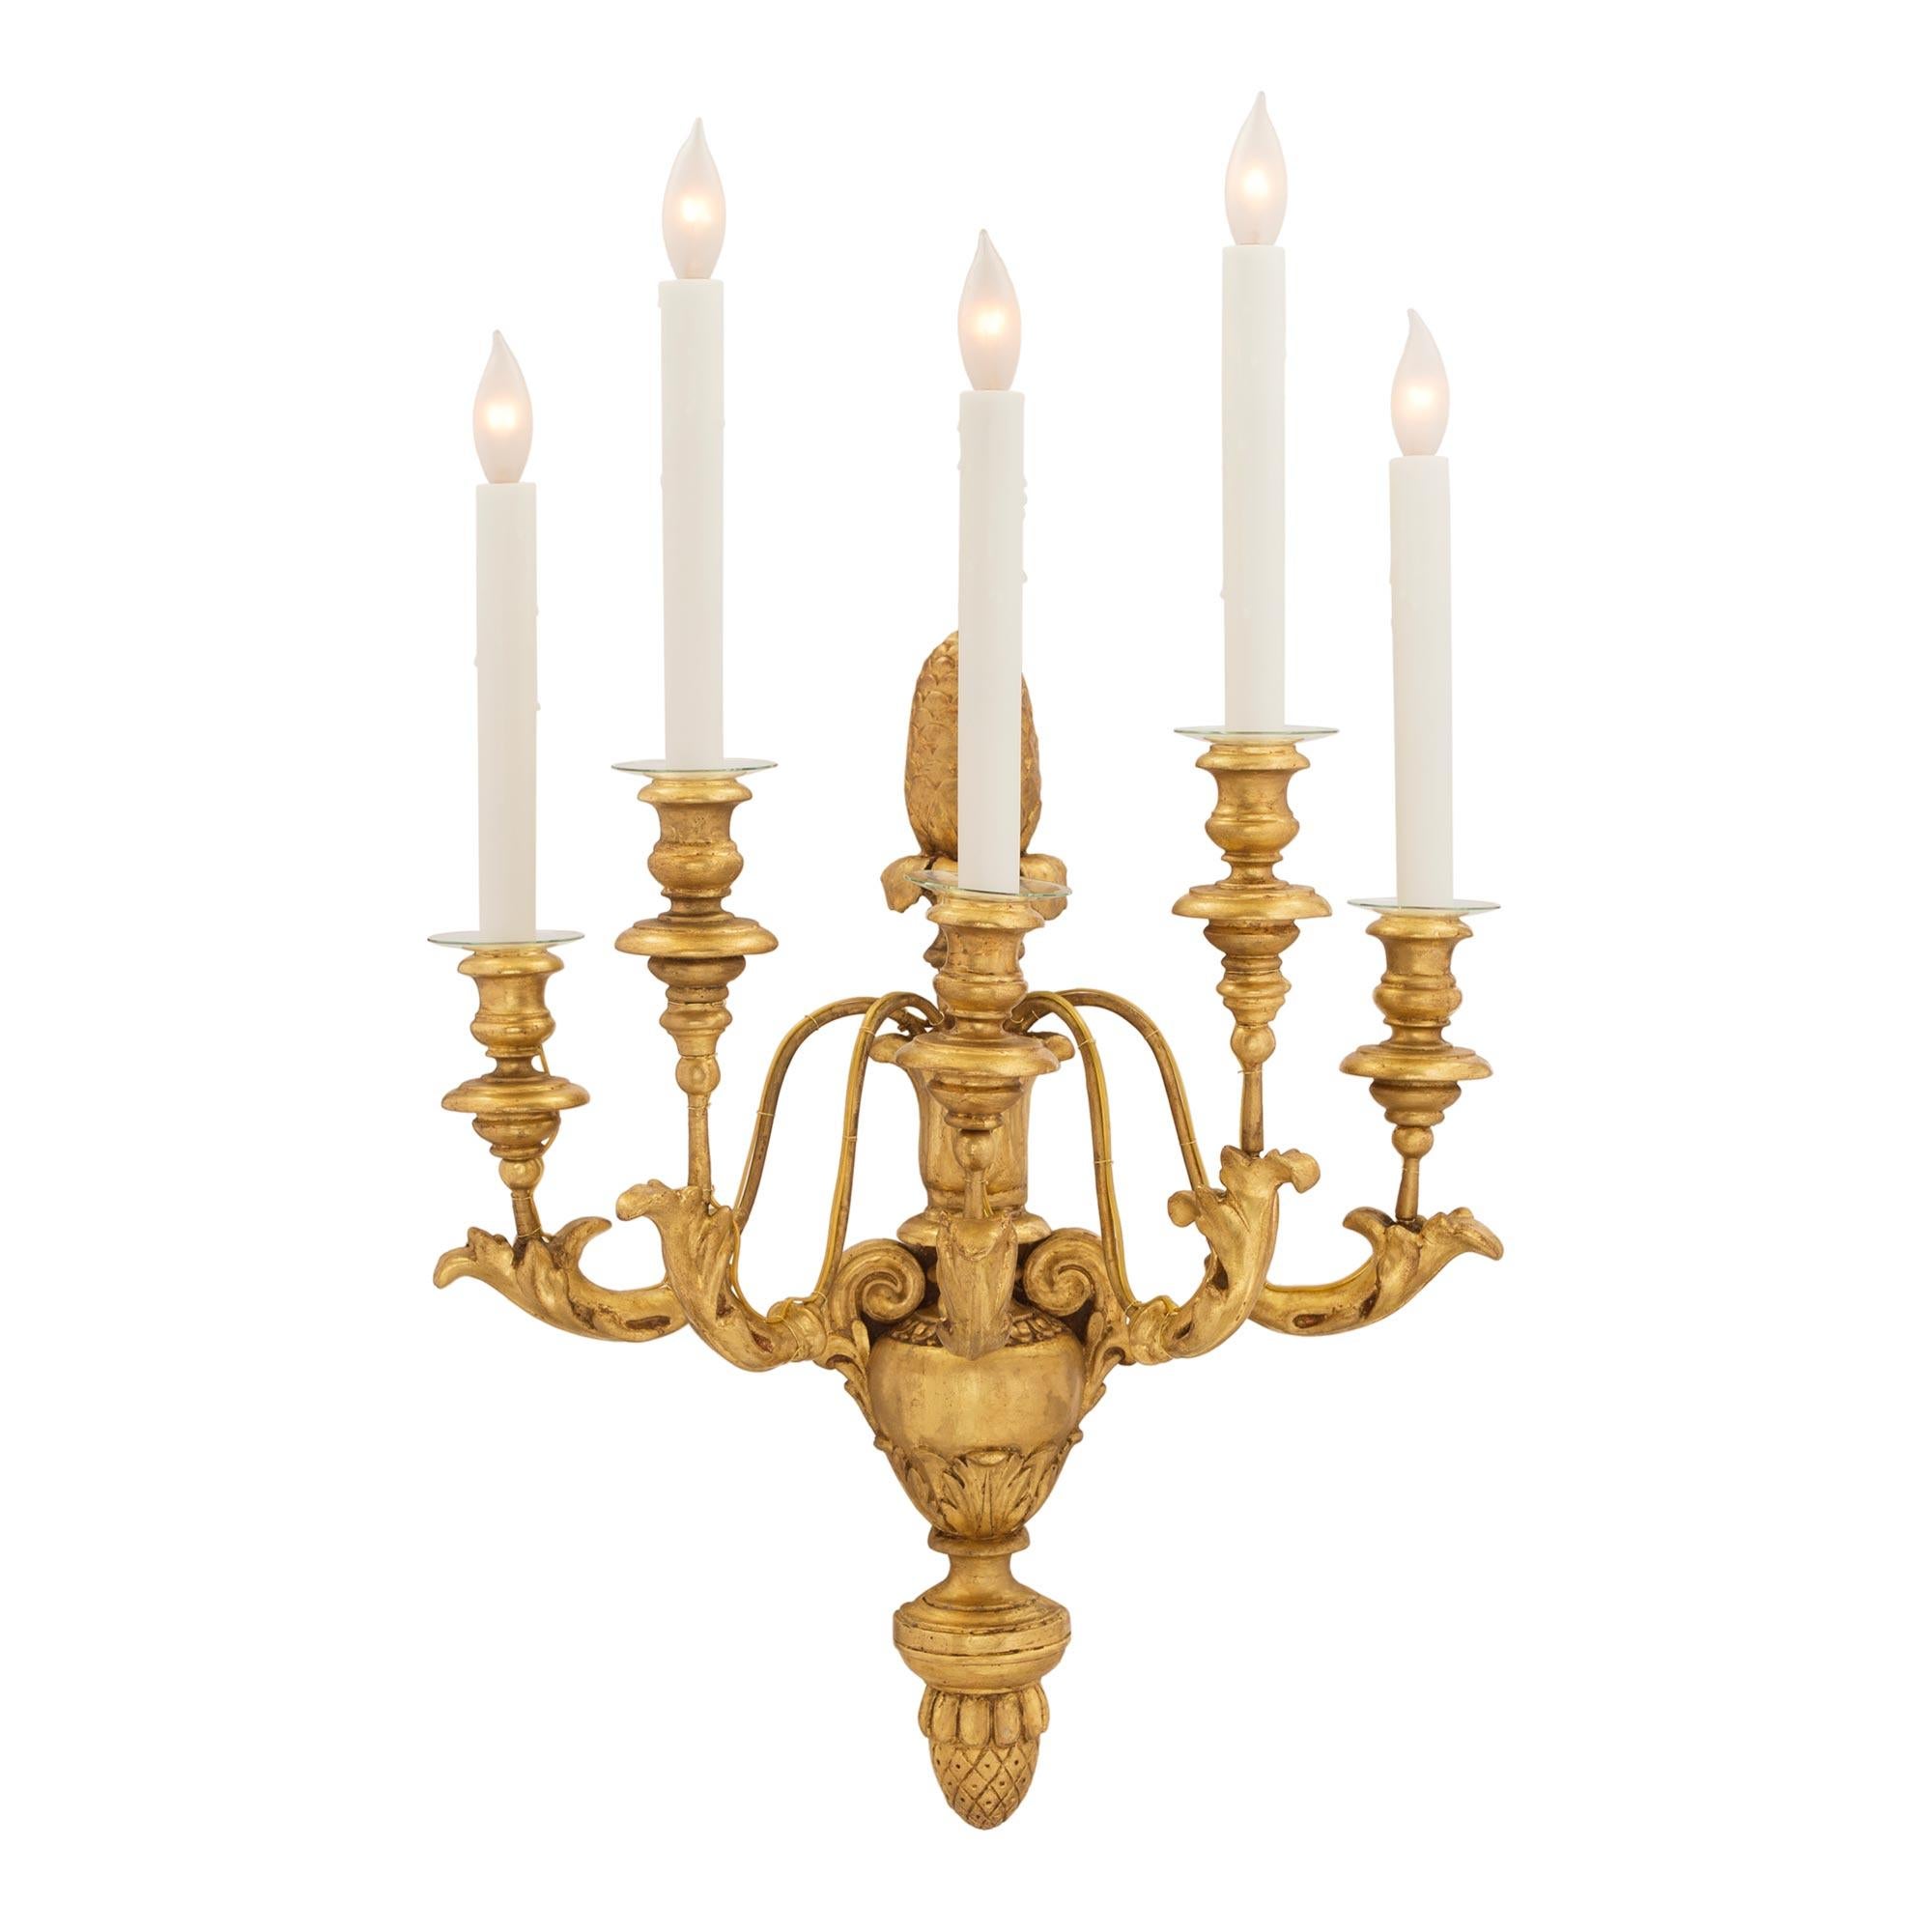 Ein schönes Paar italienischer fünfarmiger vergoldeter toskanischer Wandleuchter aus dem 19. Jede Leuchte wird von einer fein geschnitzten Eichel mit einer dekorativen Urne in der Mitte gekrönt. Die eleganten S-förmig geschwungenen Arme sind mit